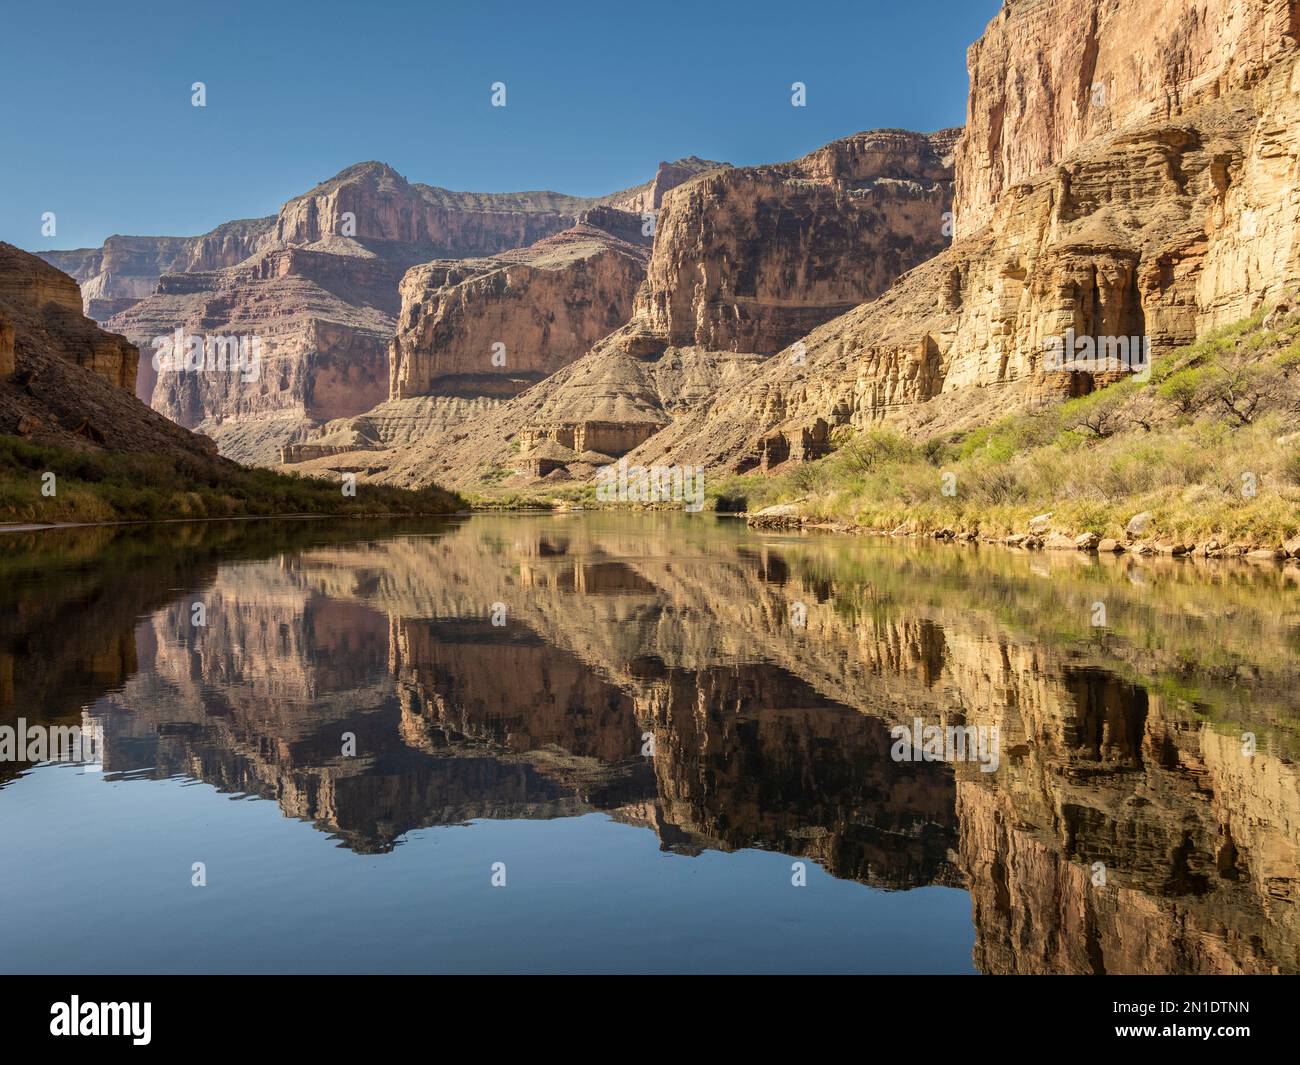 Vue sur le Grand Canyon supérieur, le parc national du Grand Canyon, site classé au patrimoine mondial de l'UNESCO, Arizona, États-Unis d'Amérique, Amérique du Nord Banque D'Images